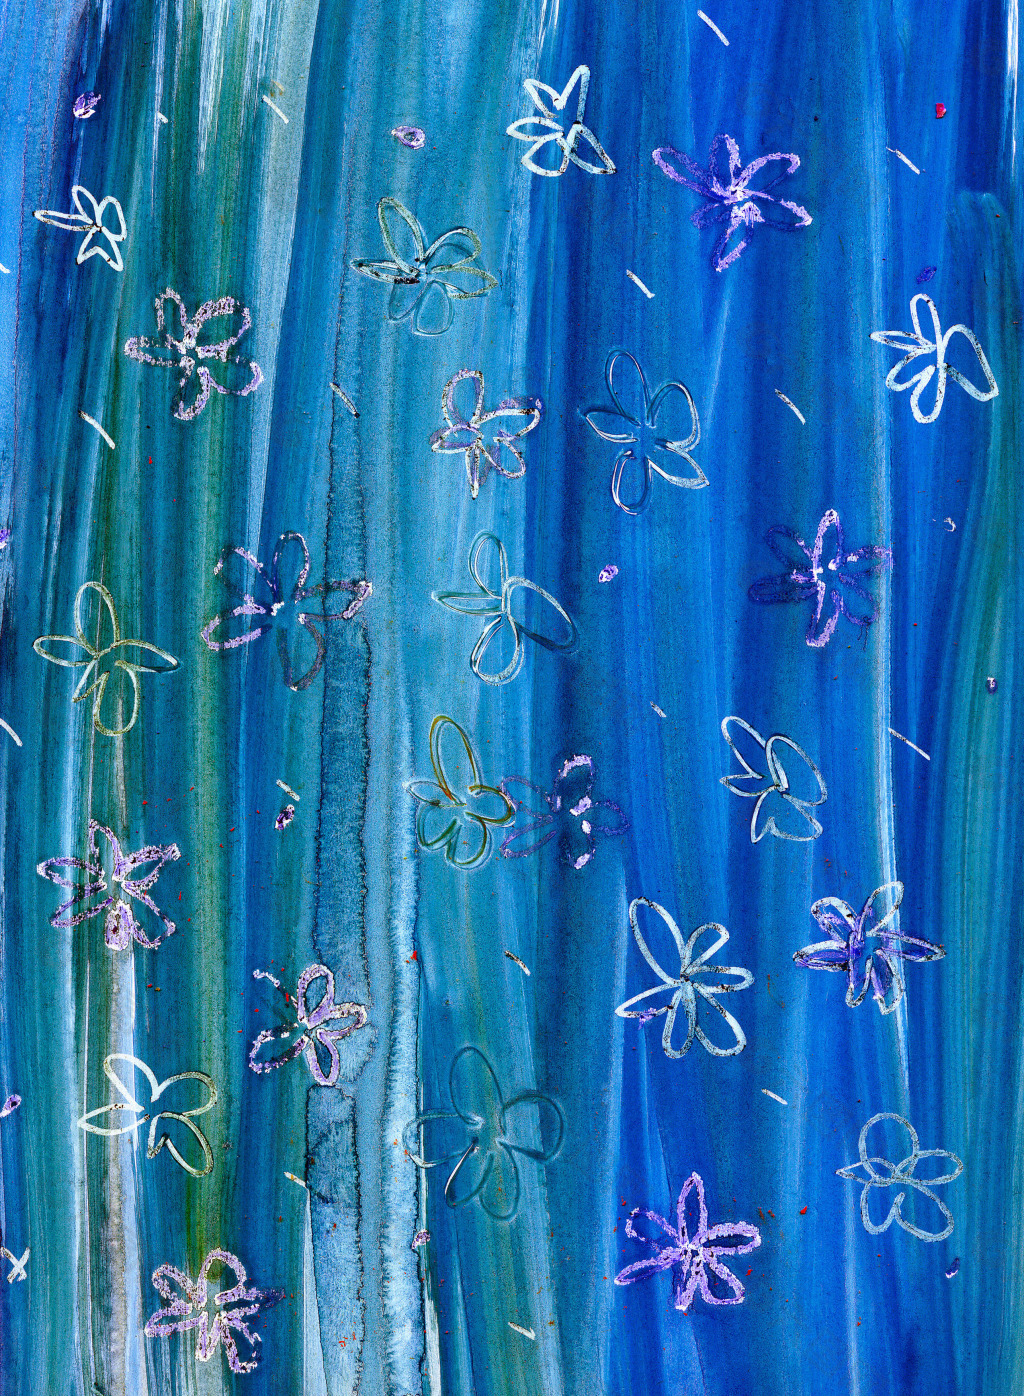 蓝色花朵刷痕背景